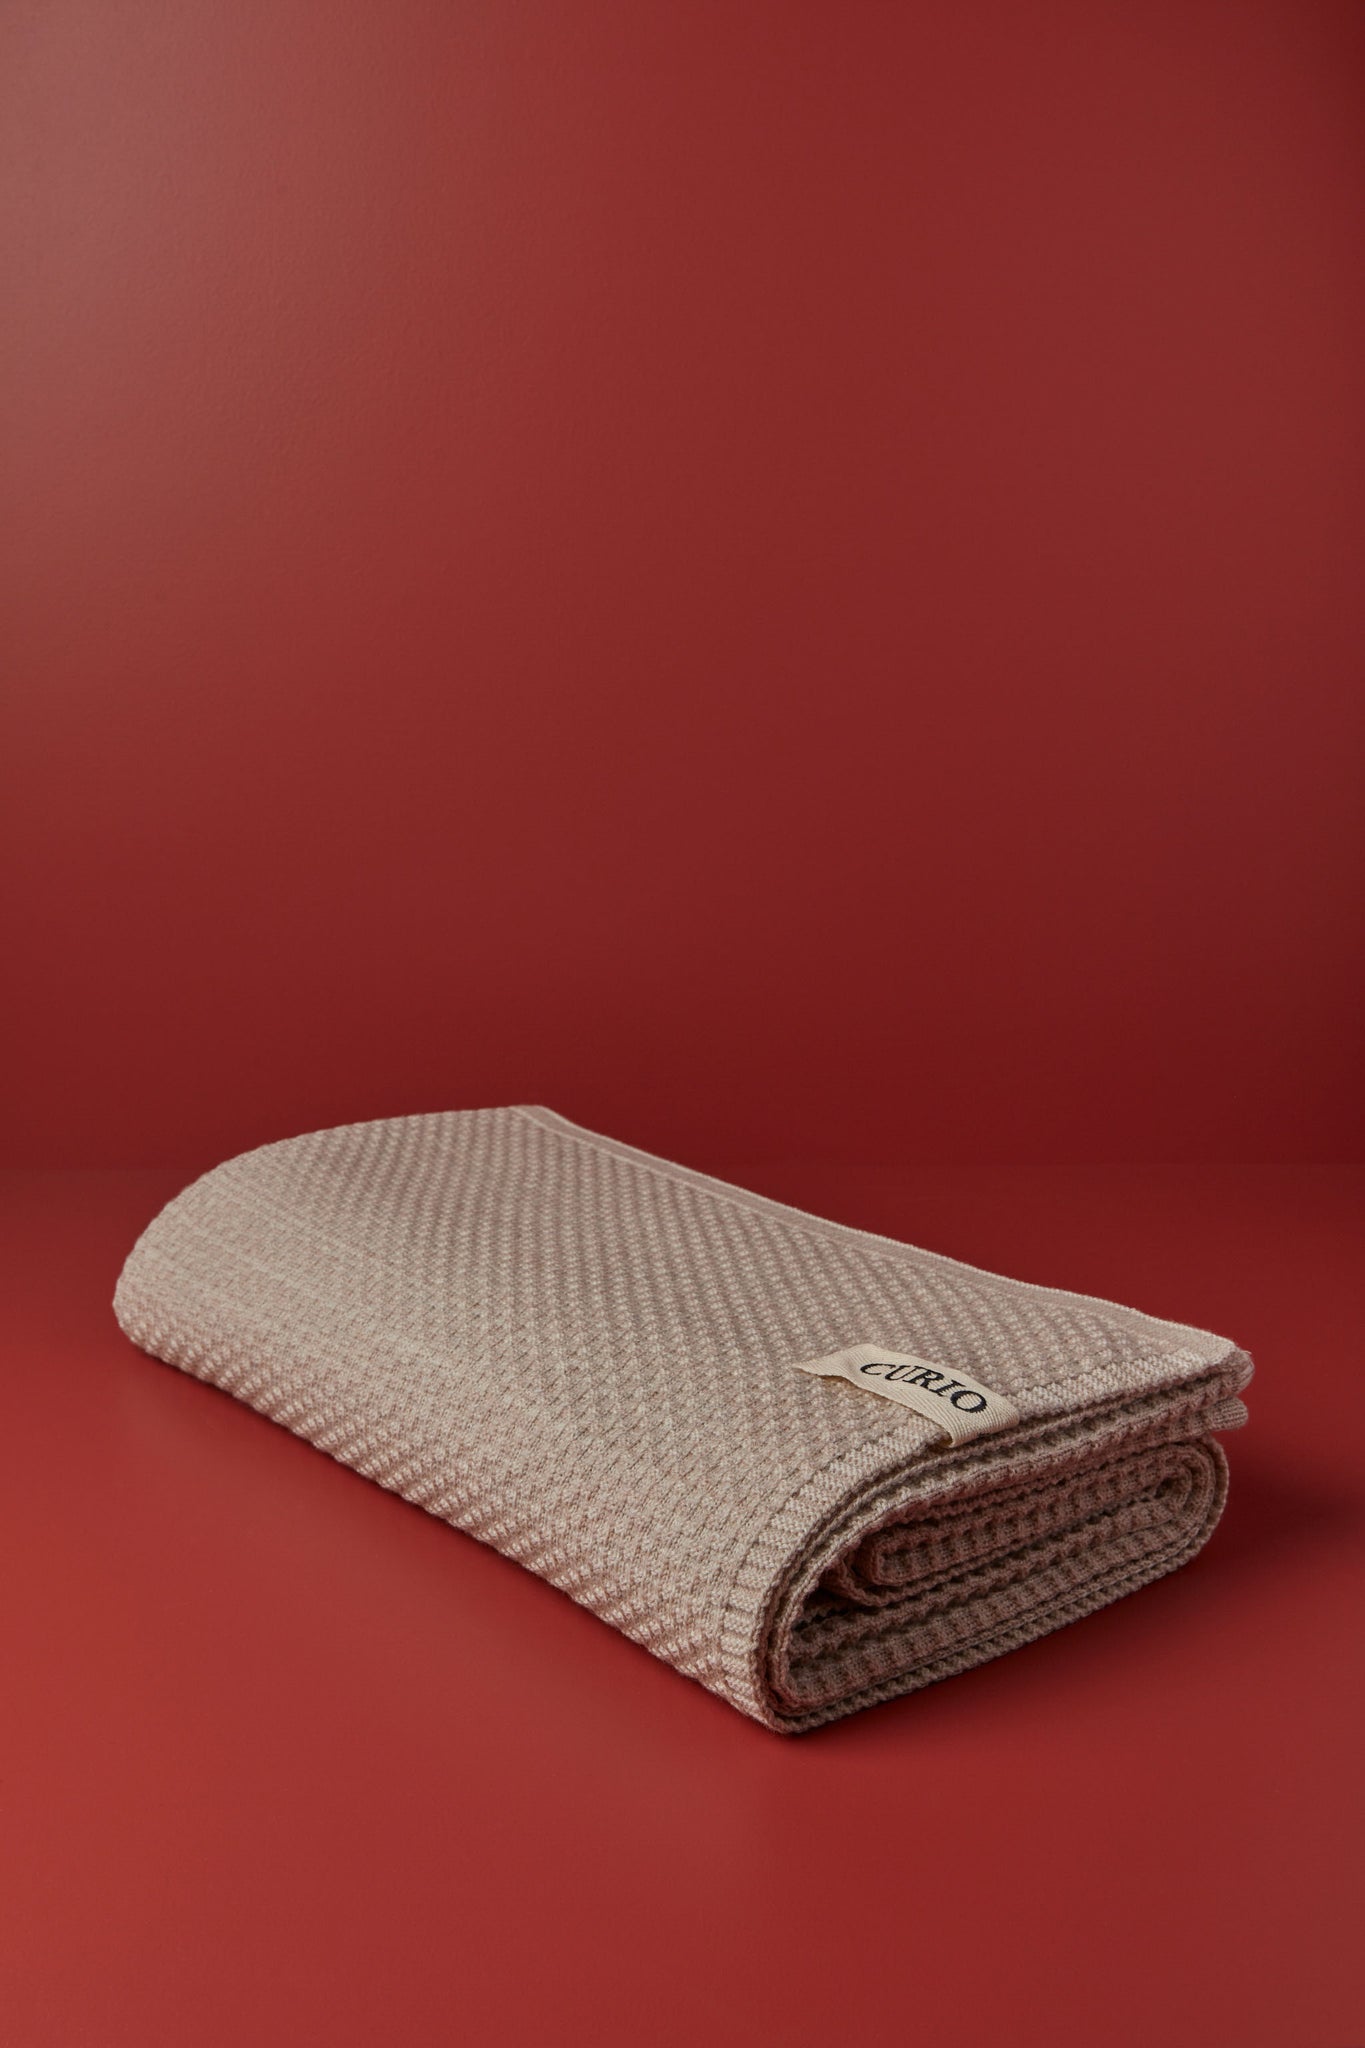 Curio - Merino Wool Queen Blanket, Oats Texture